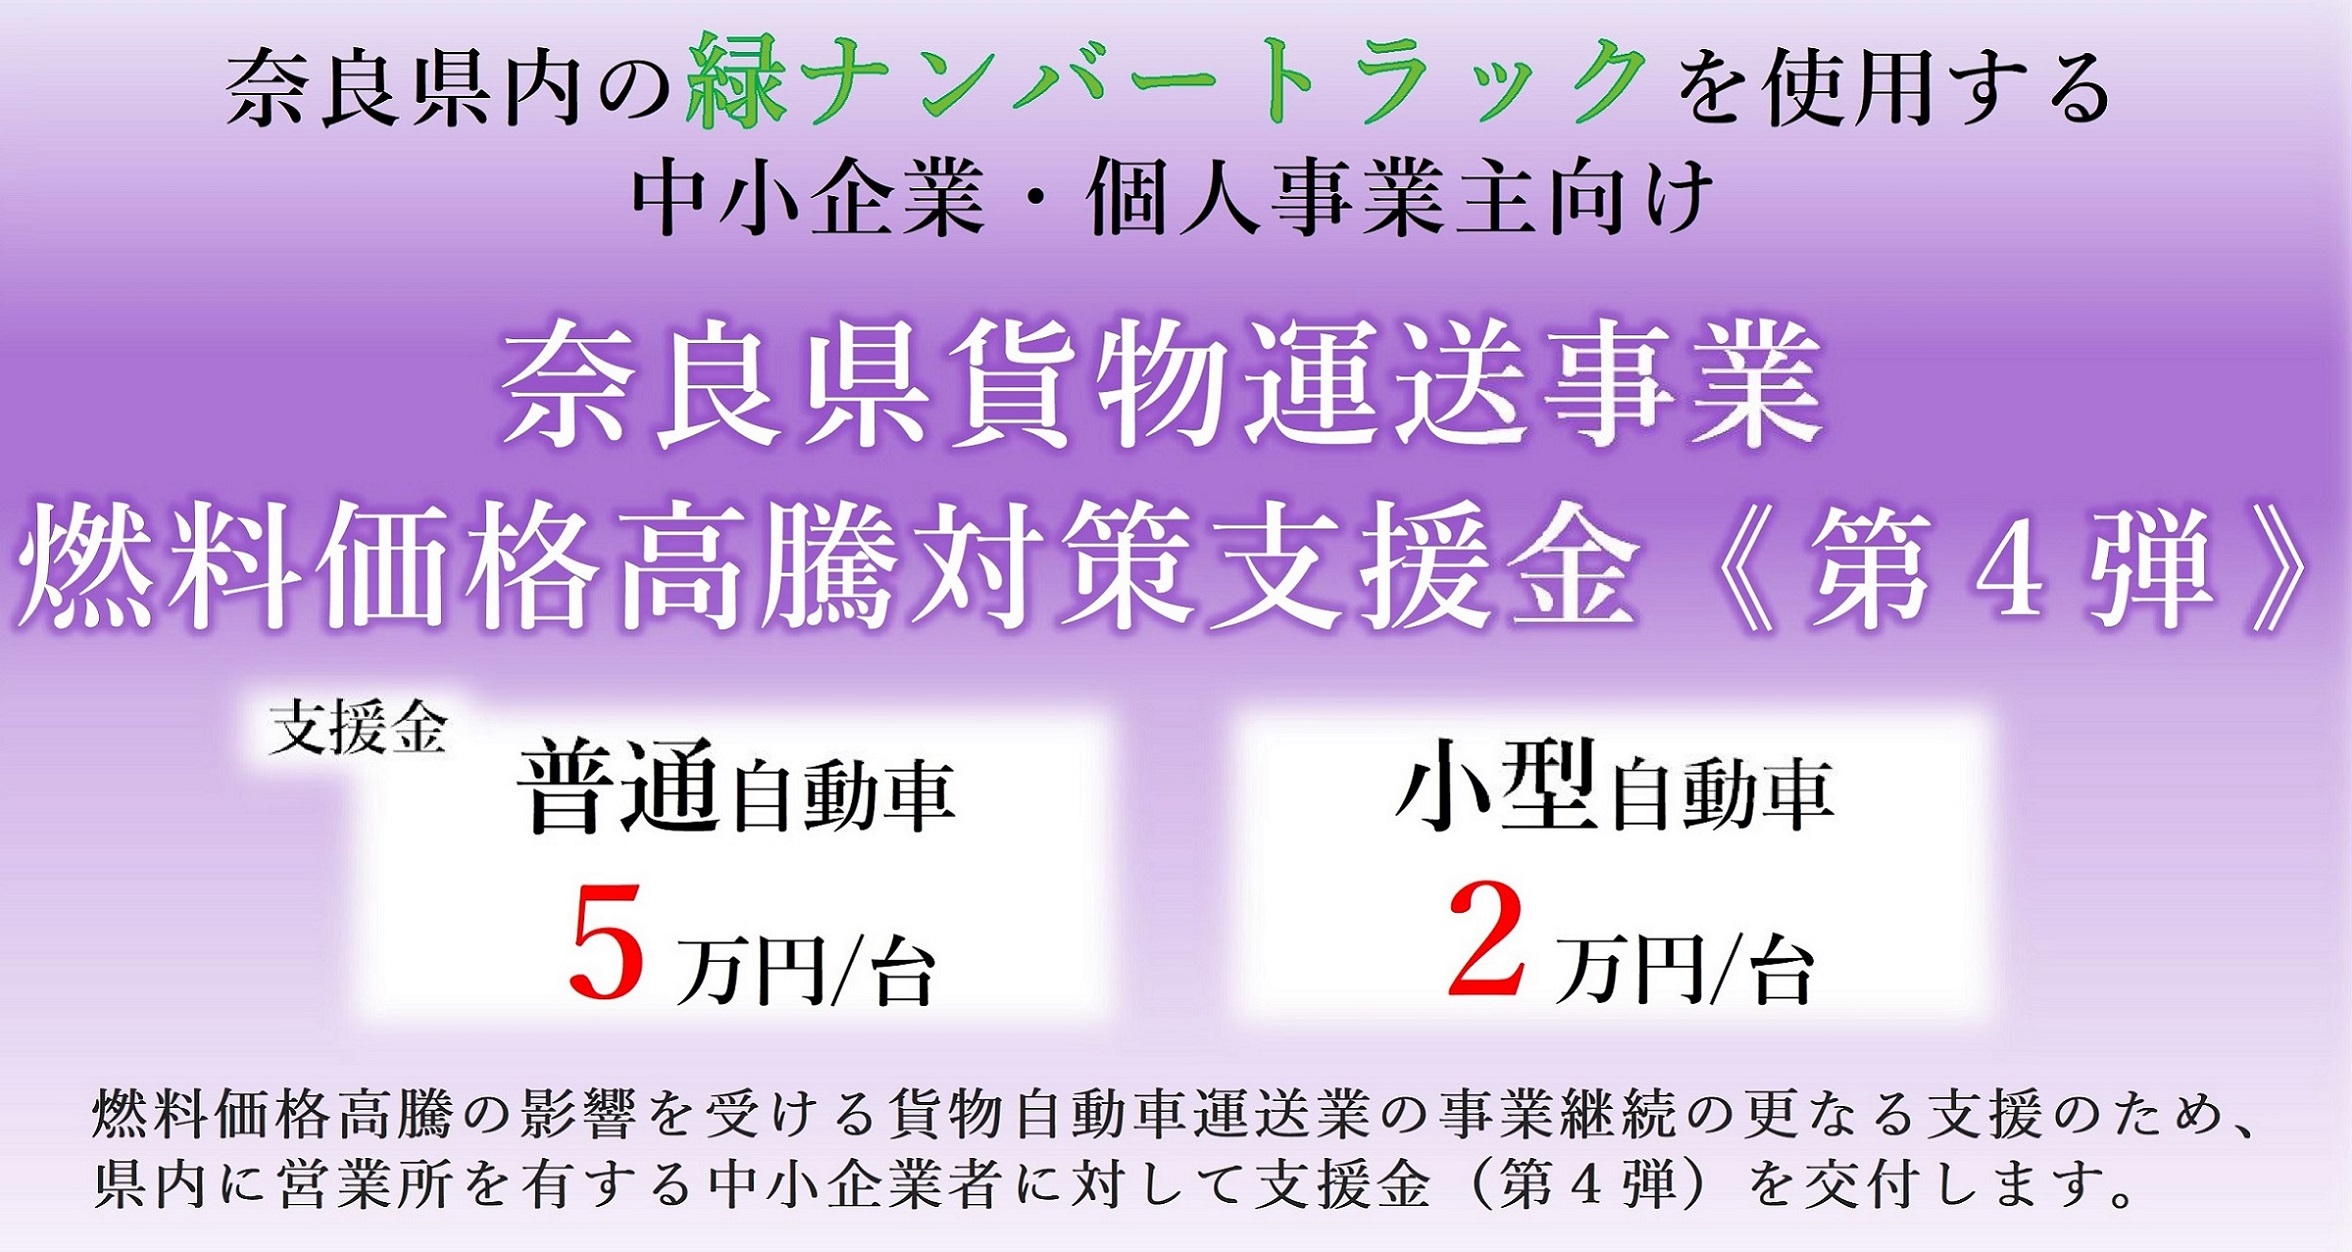 奈良県貨物運送事業燃料価格高騰対策支援金（第4弾）